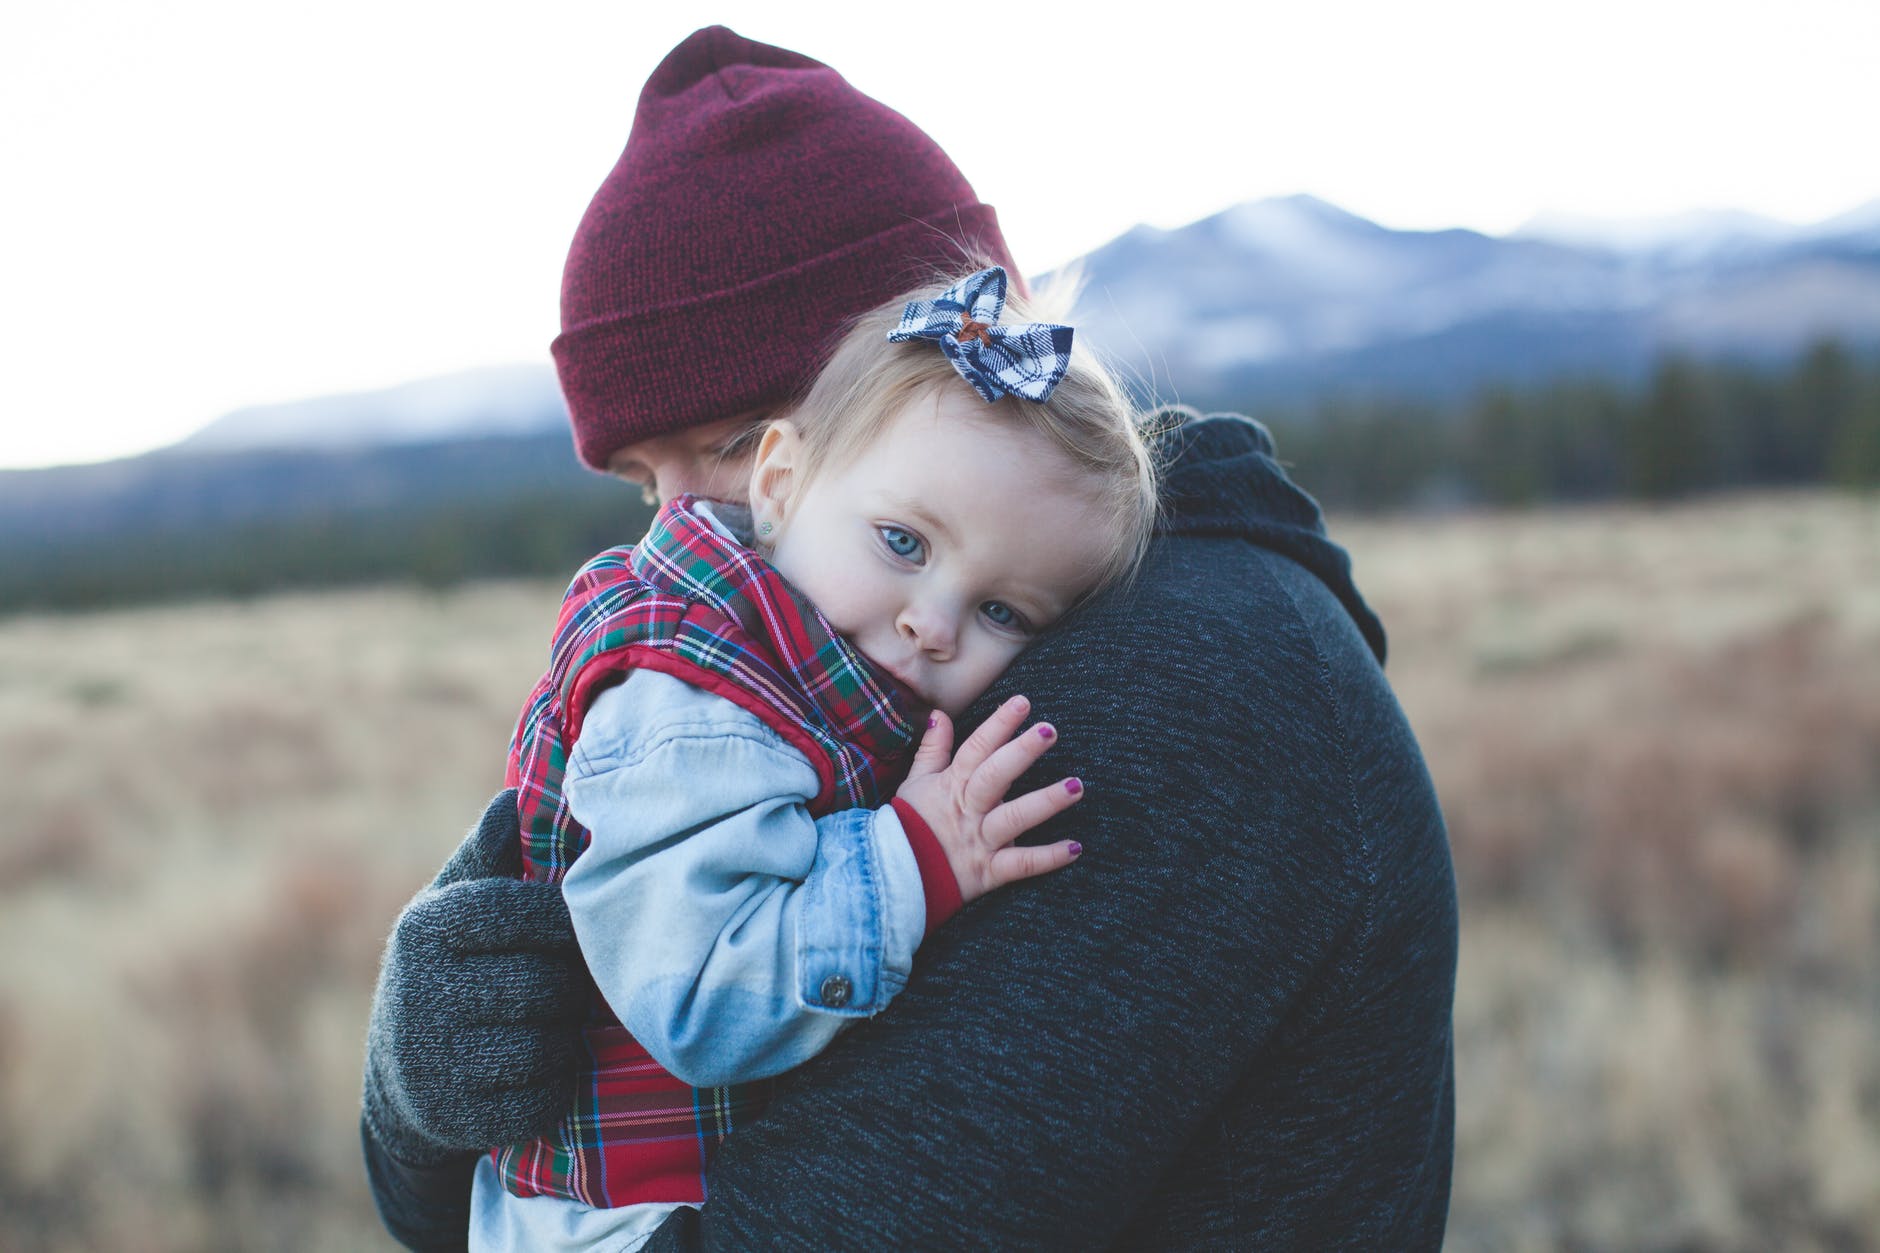 Un bebé en brazos de un adulto cariñoso. | Foto: Pexels.